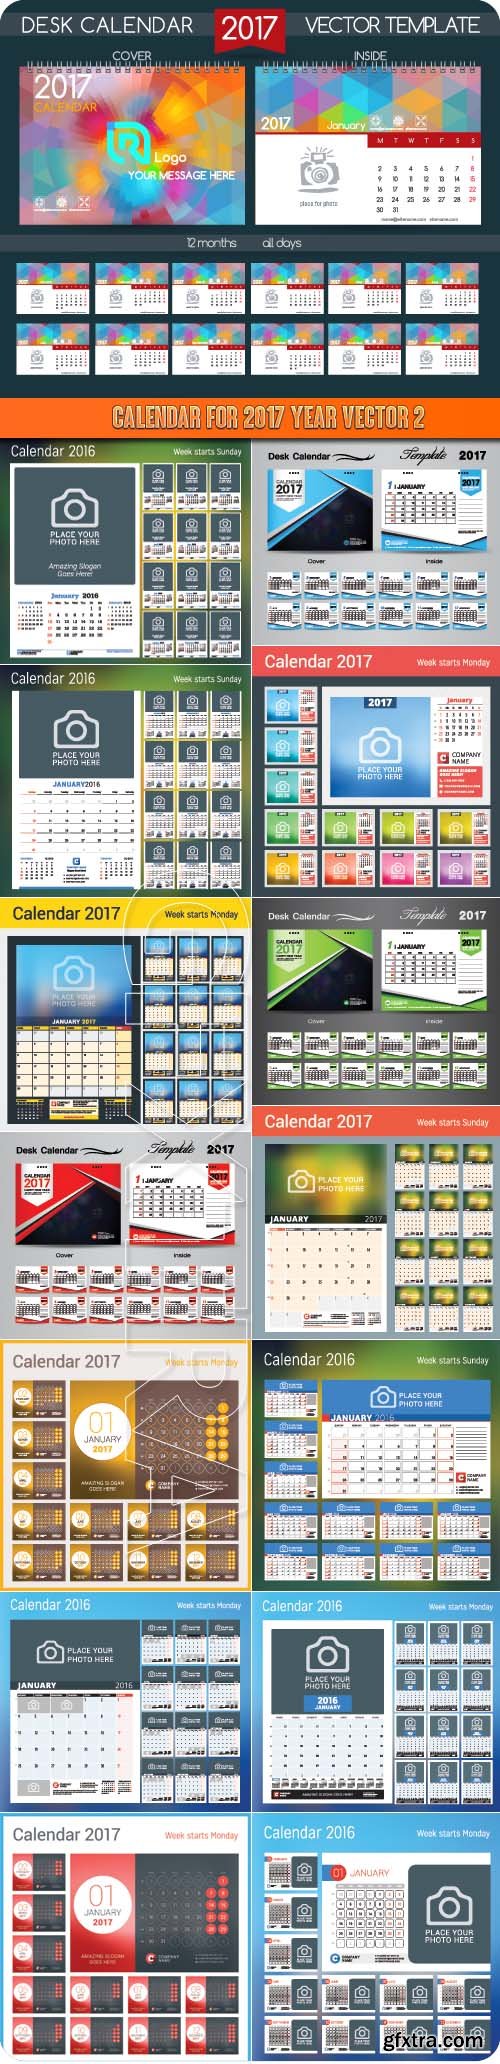 Calendar for 2017 year vector 2